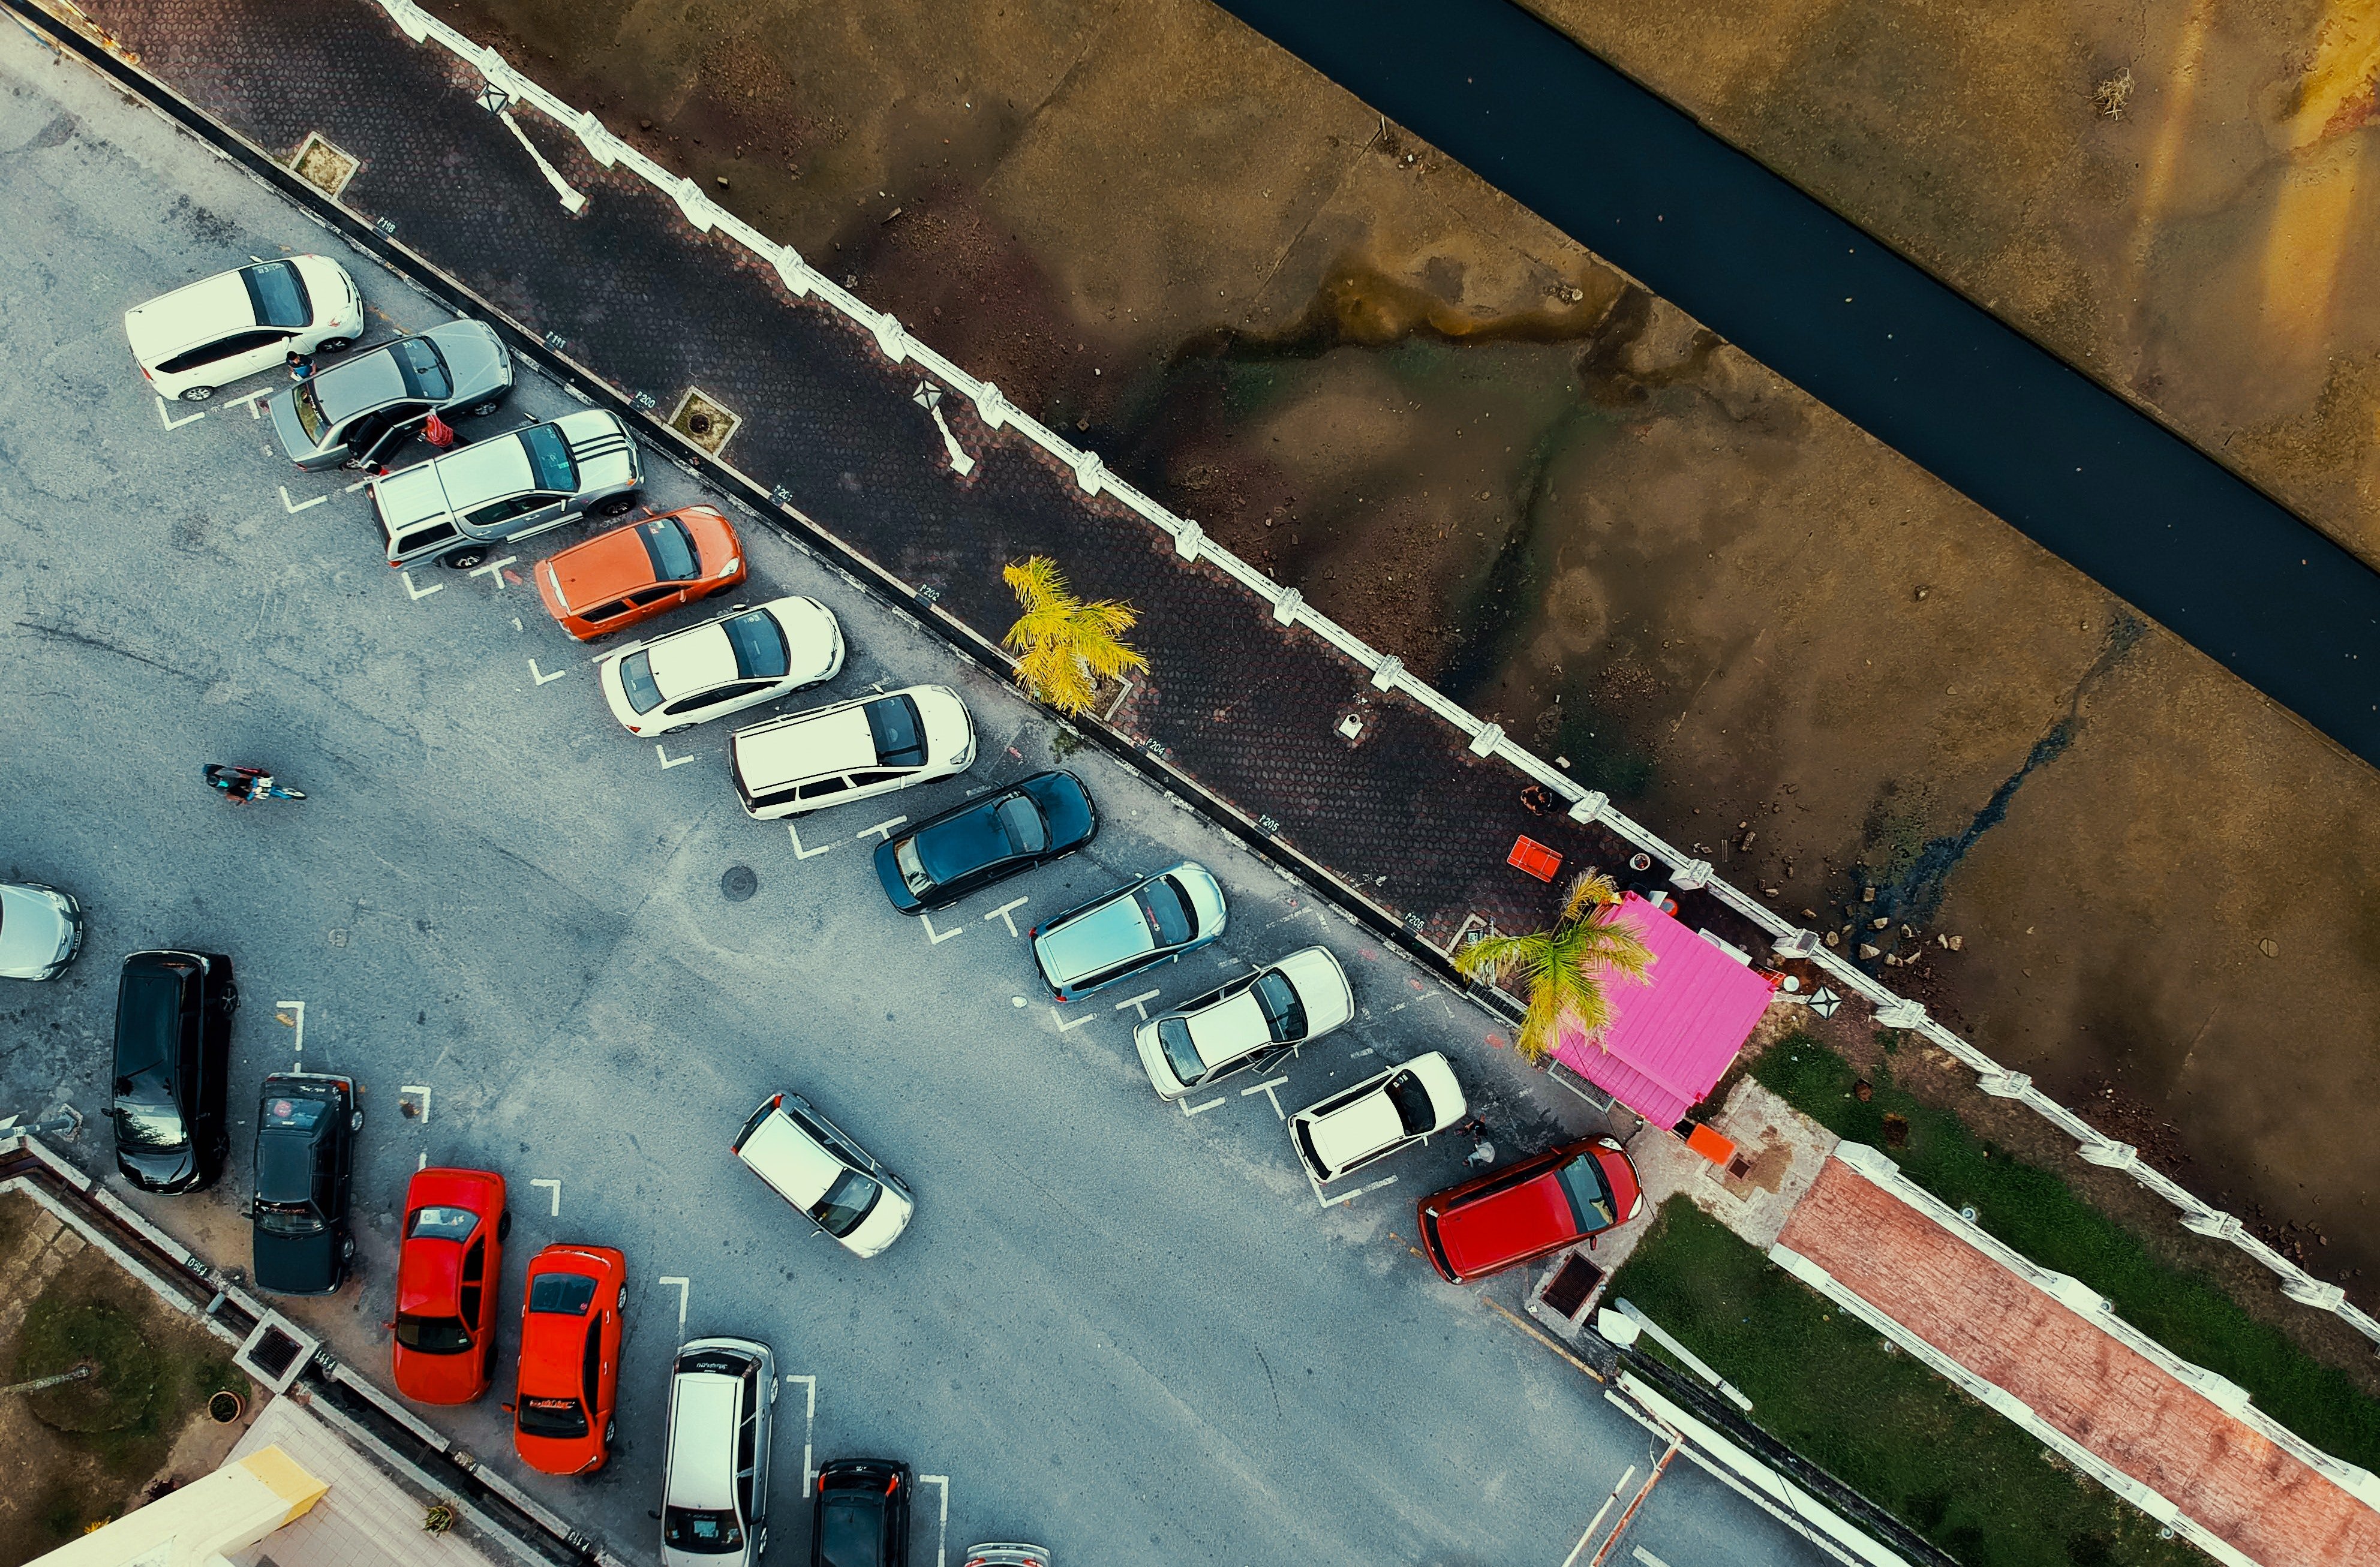 Eines Tages hatte Jack eine Idee, nachdem er Autos auf dem Parkplatz eines Einkaufszentrums gesehen hatte. | Quelle: Pexels